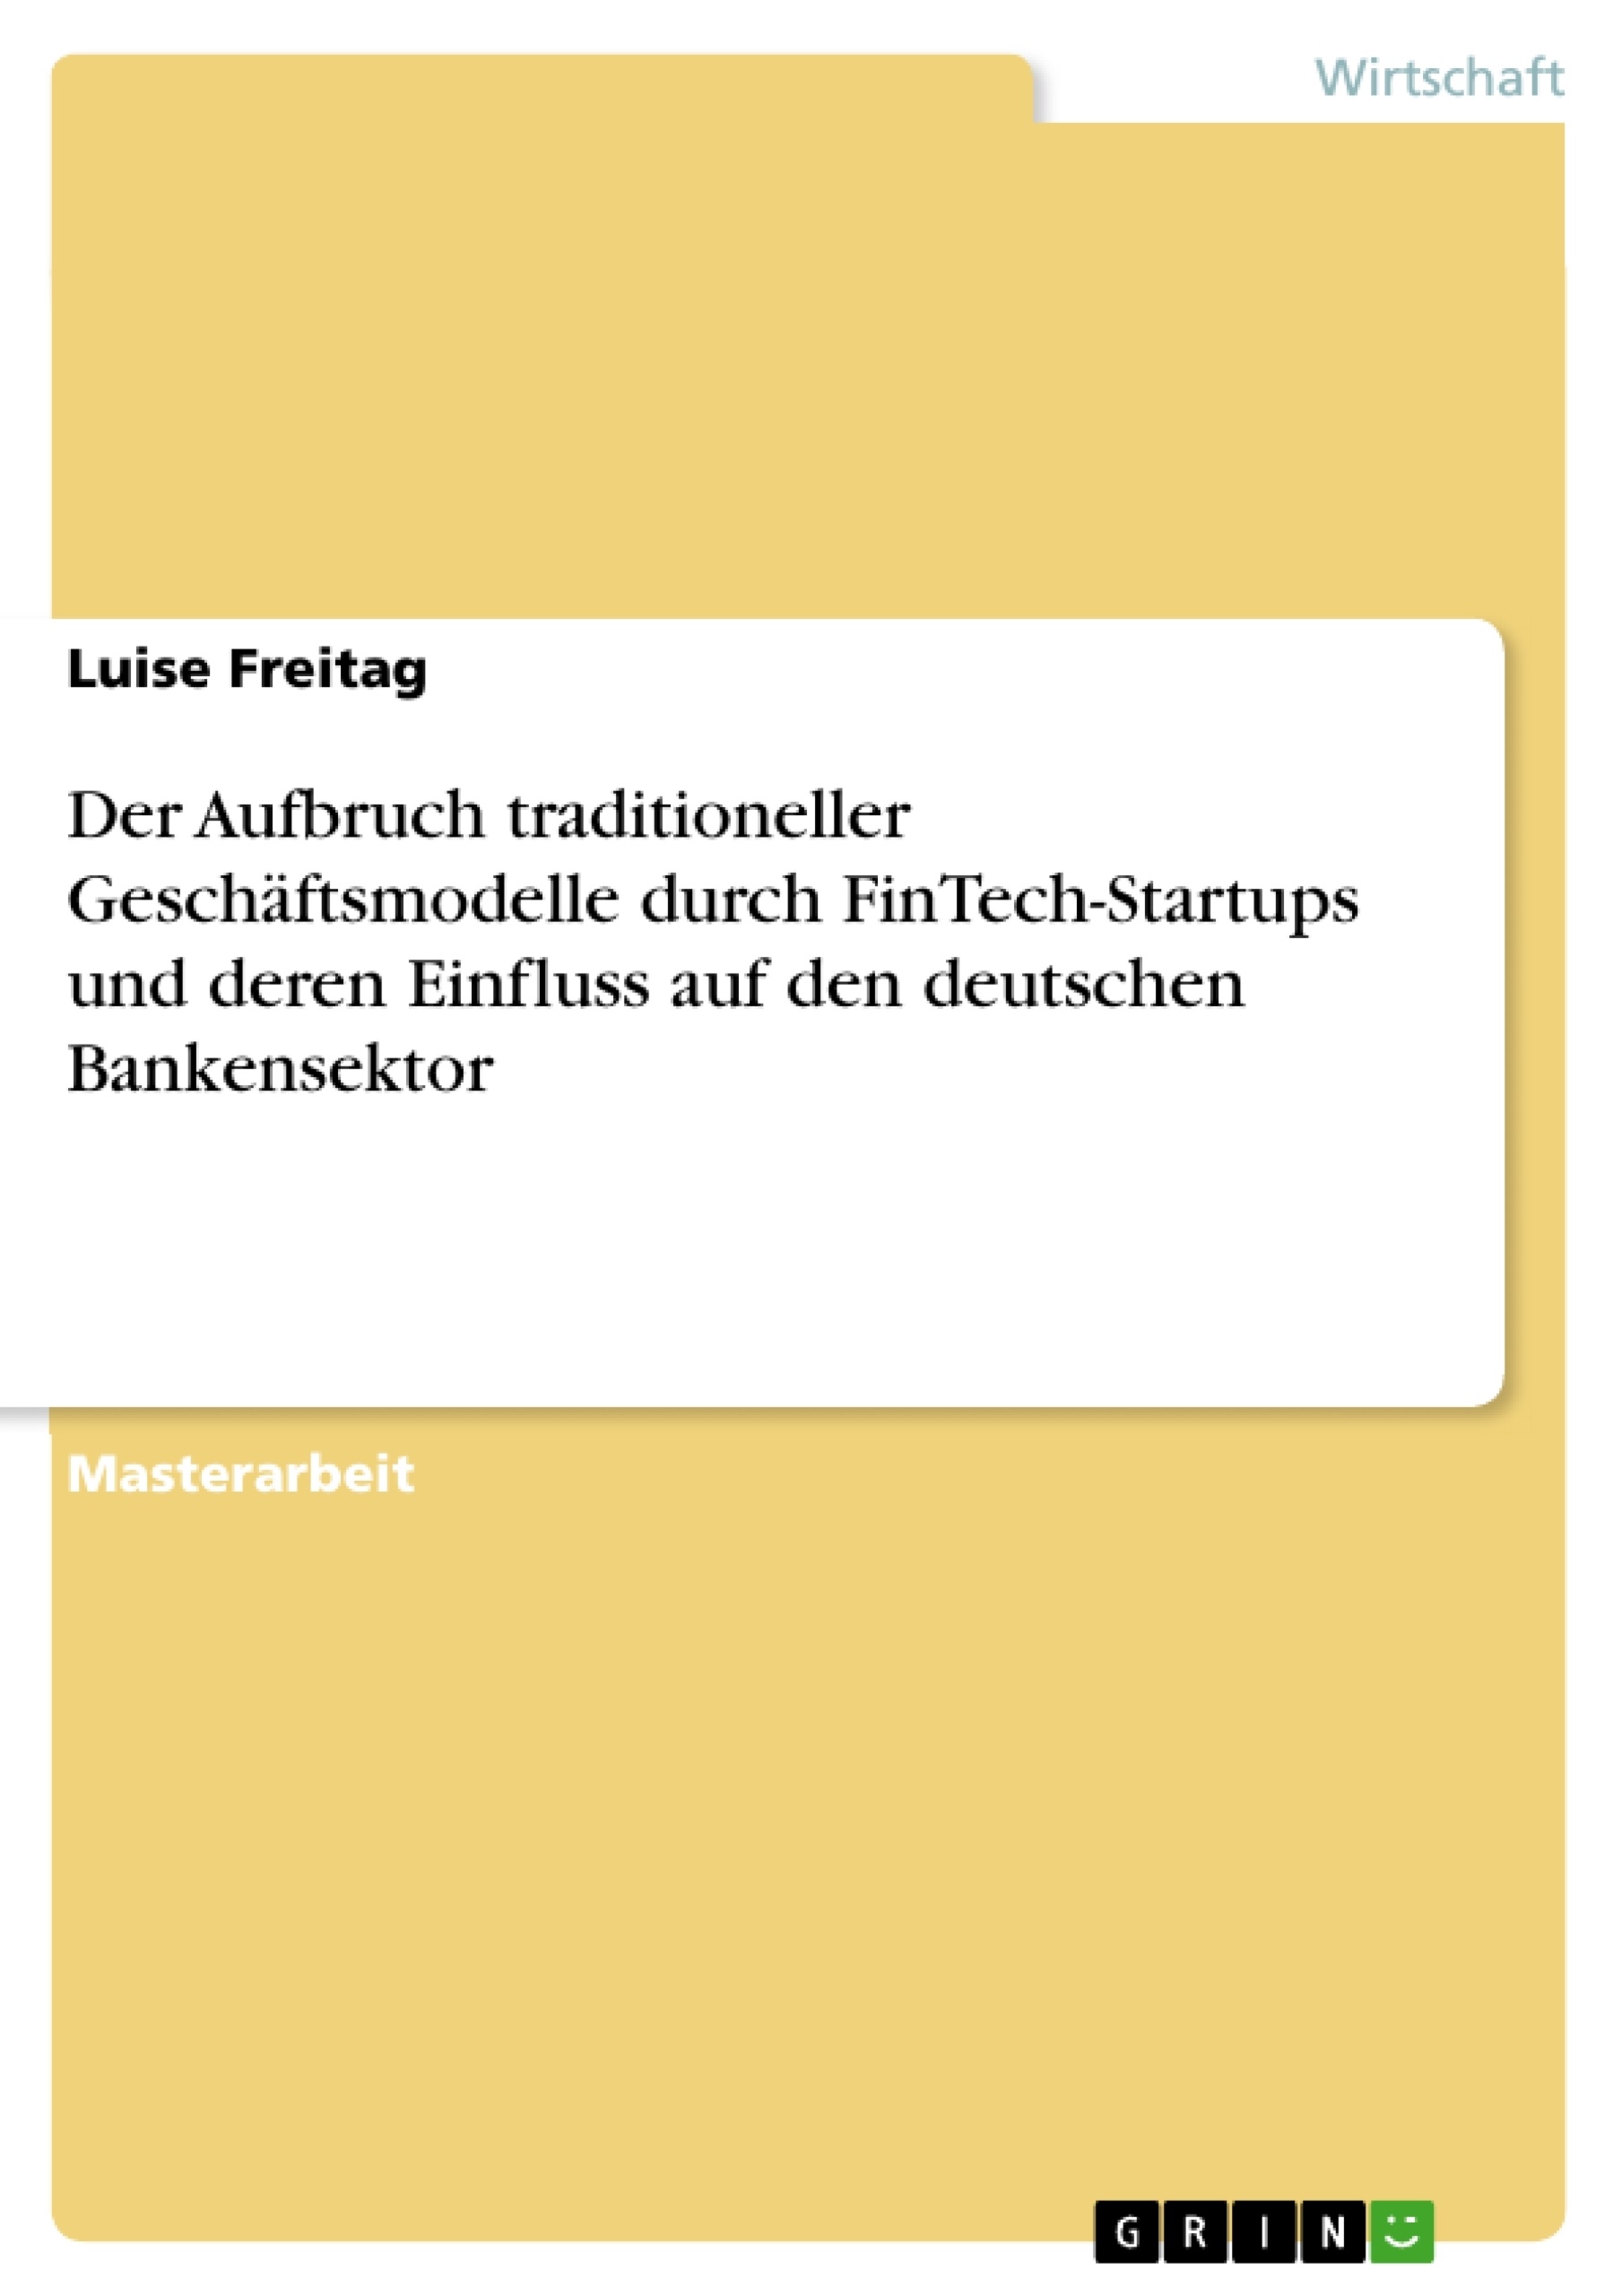 Titre: Der Aufbruch traditioneller Geschäftsmodelle durch FinTech-Startups und deren Einfluss auf den deutschen Bankensektor